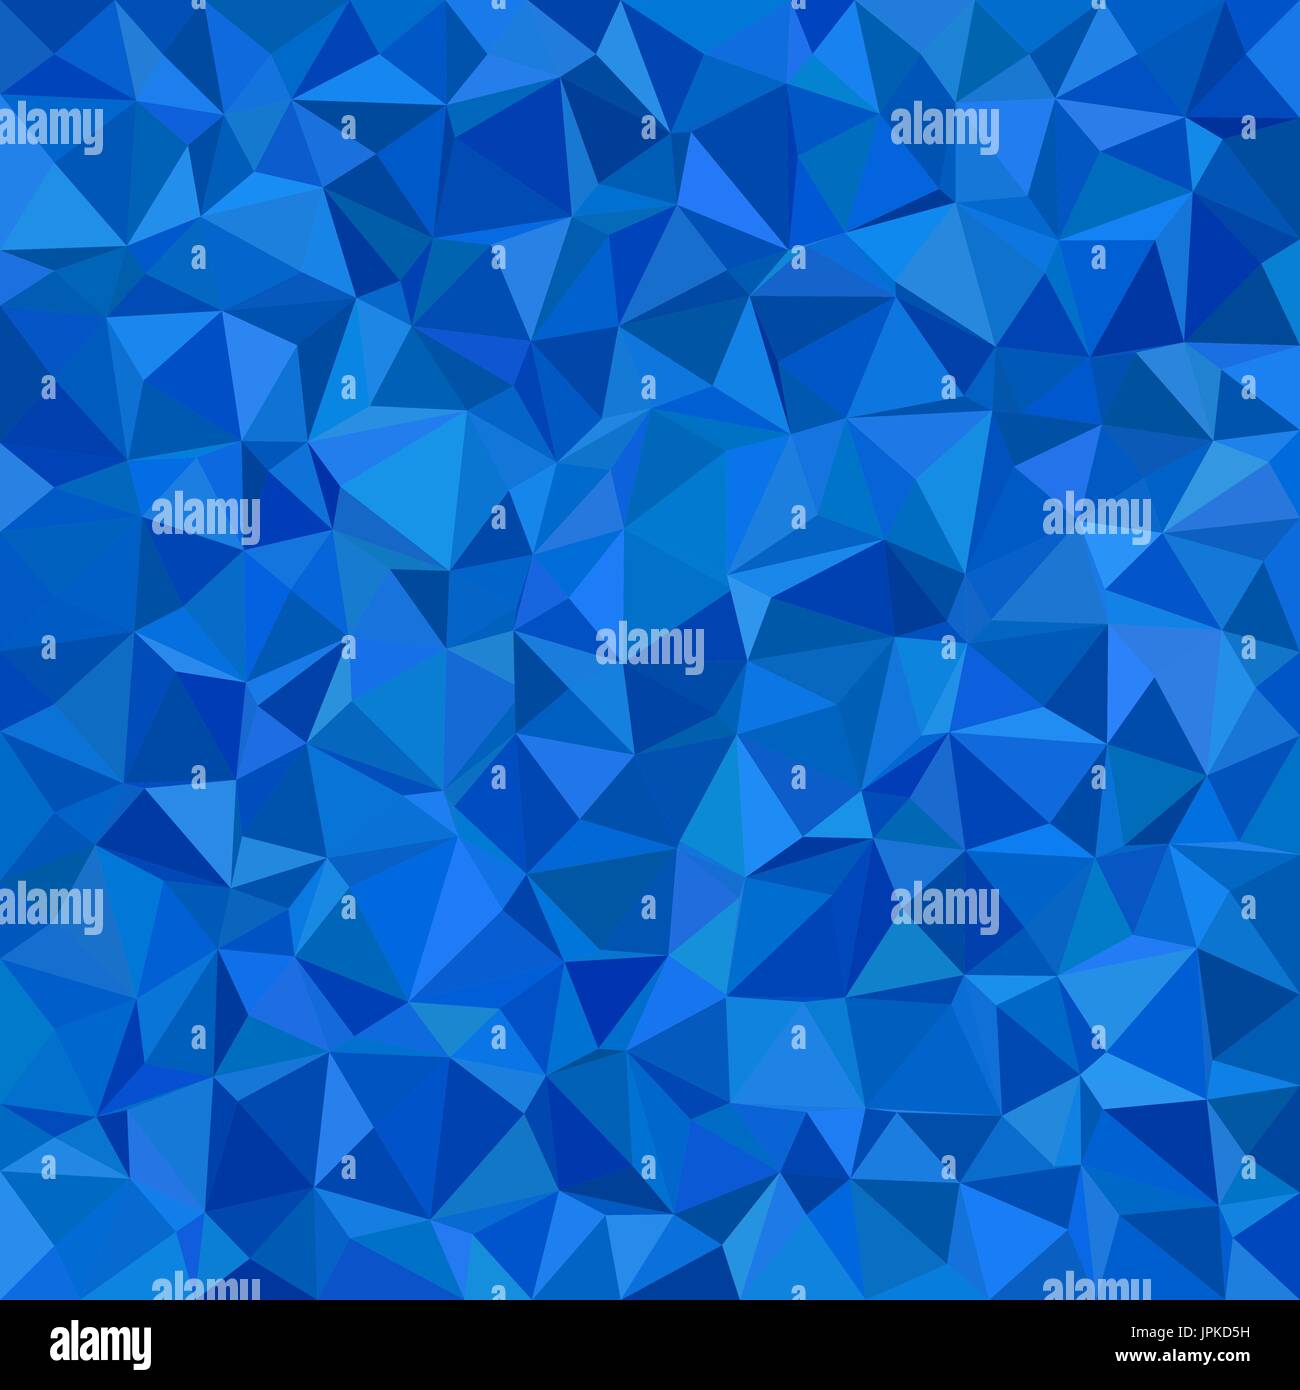 Blaues Dreieck Kachelhintergrund Mosaik - Polygon-Vektor-Illustration aus Dreiecken Stock Vektor